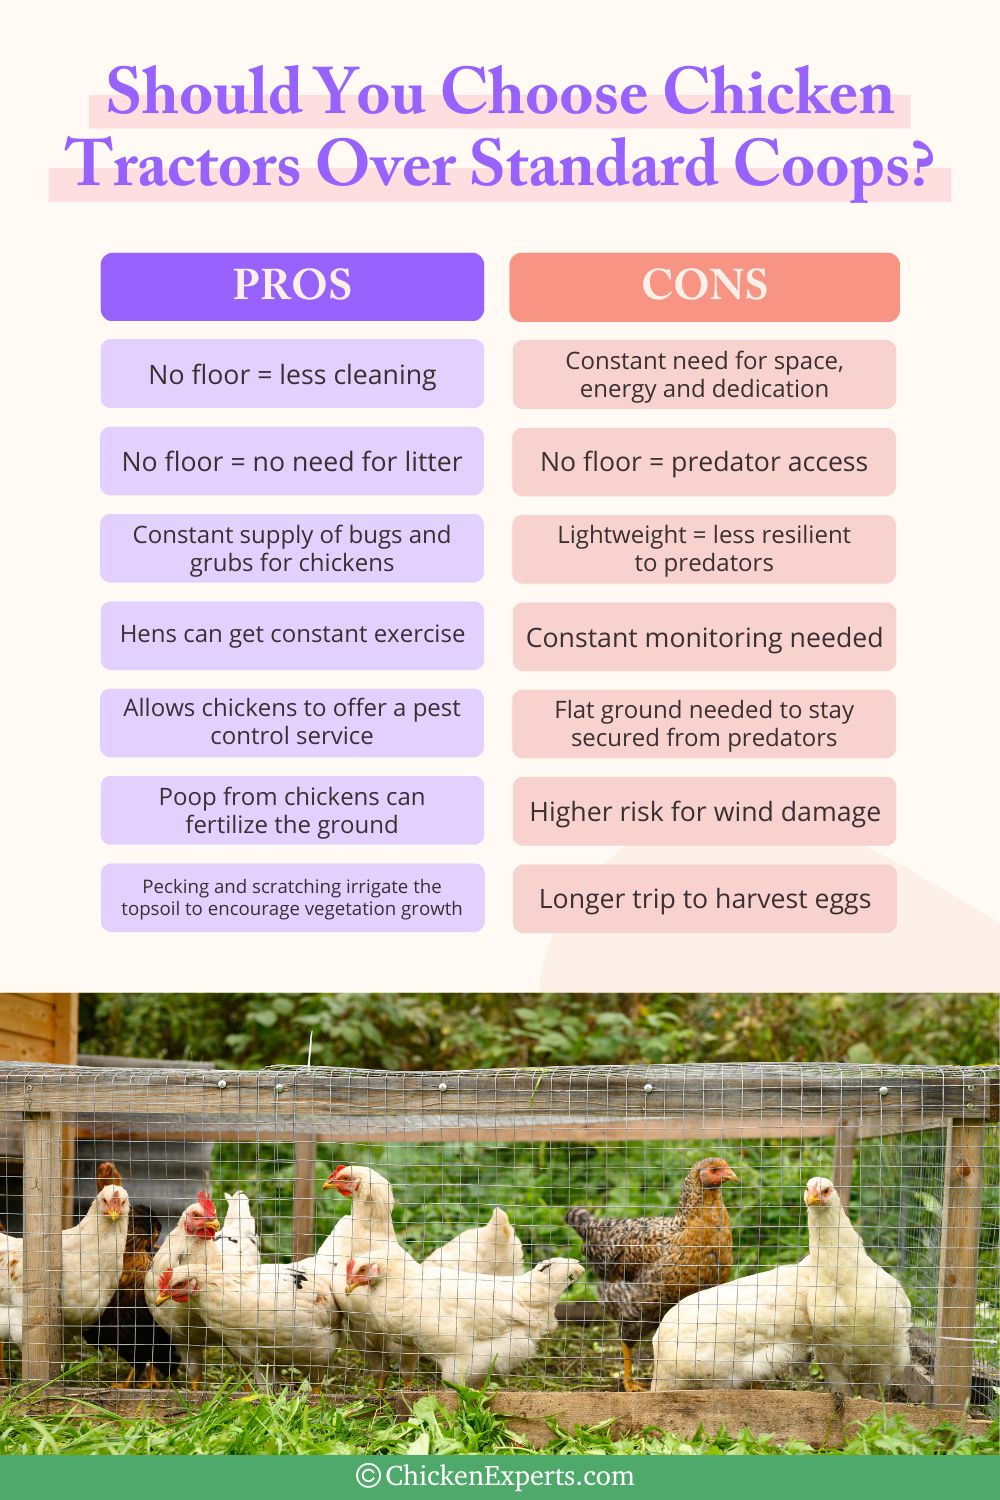 chicken tractors versus standard coops